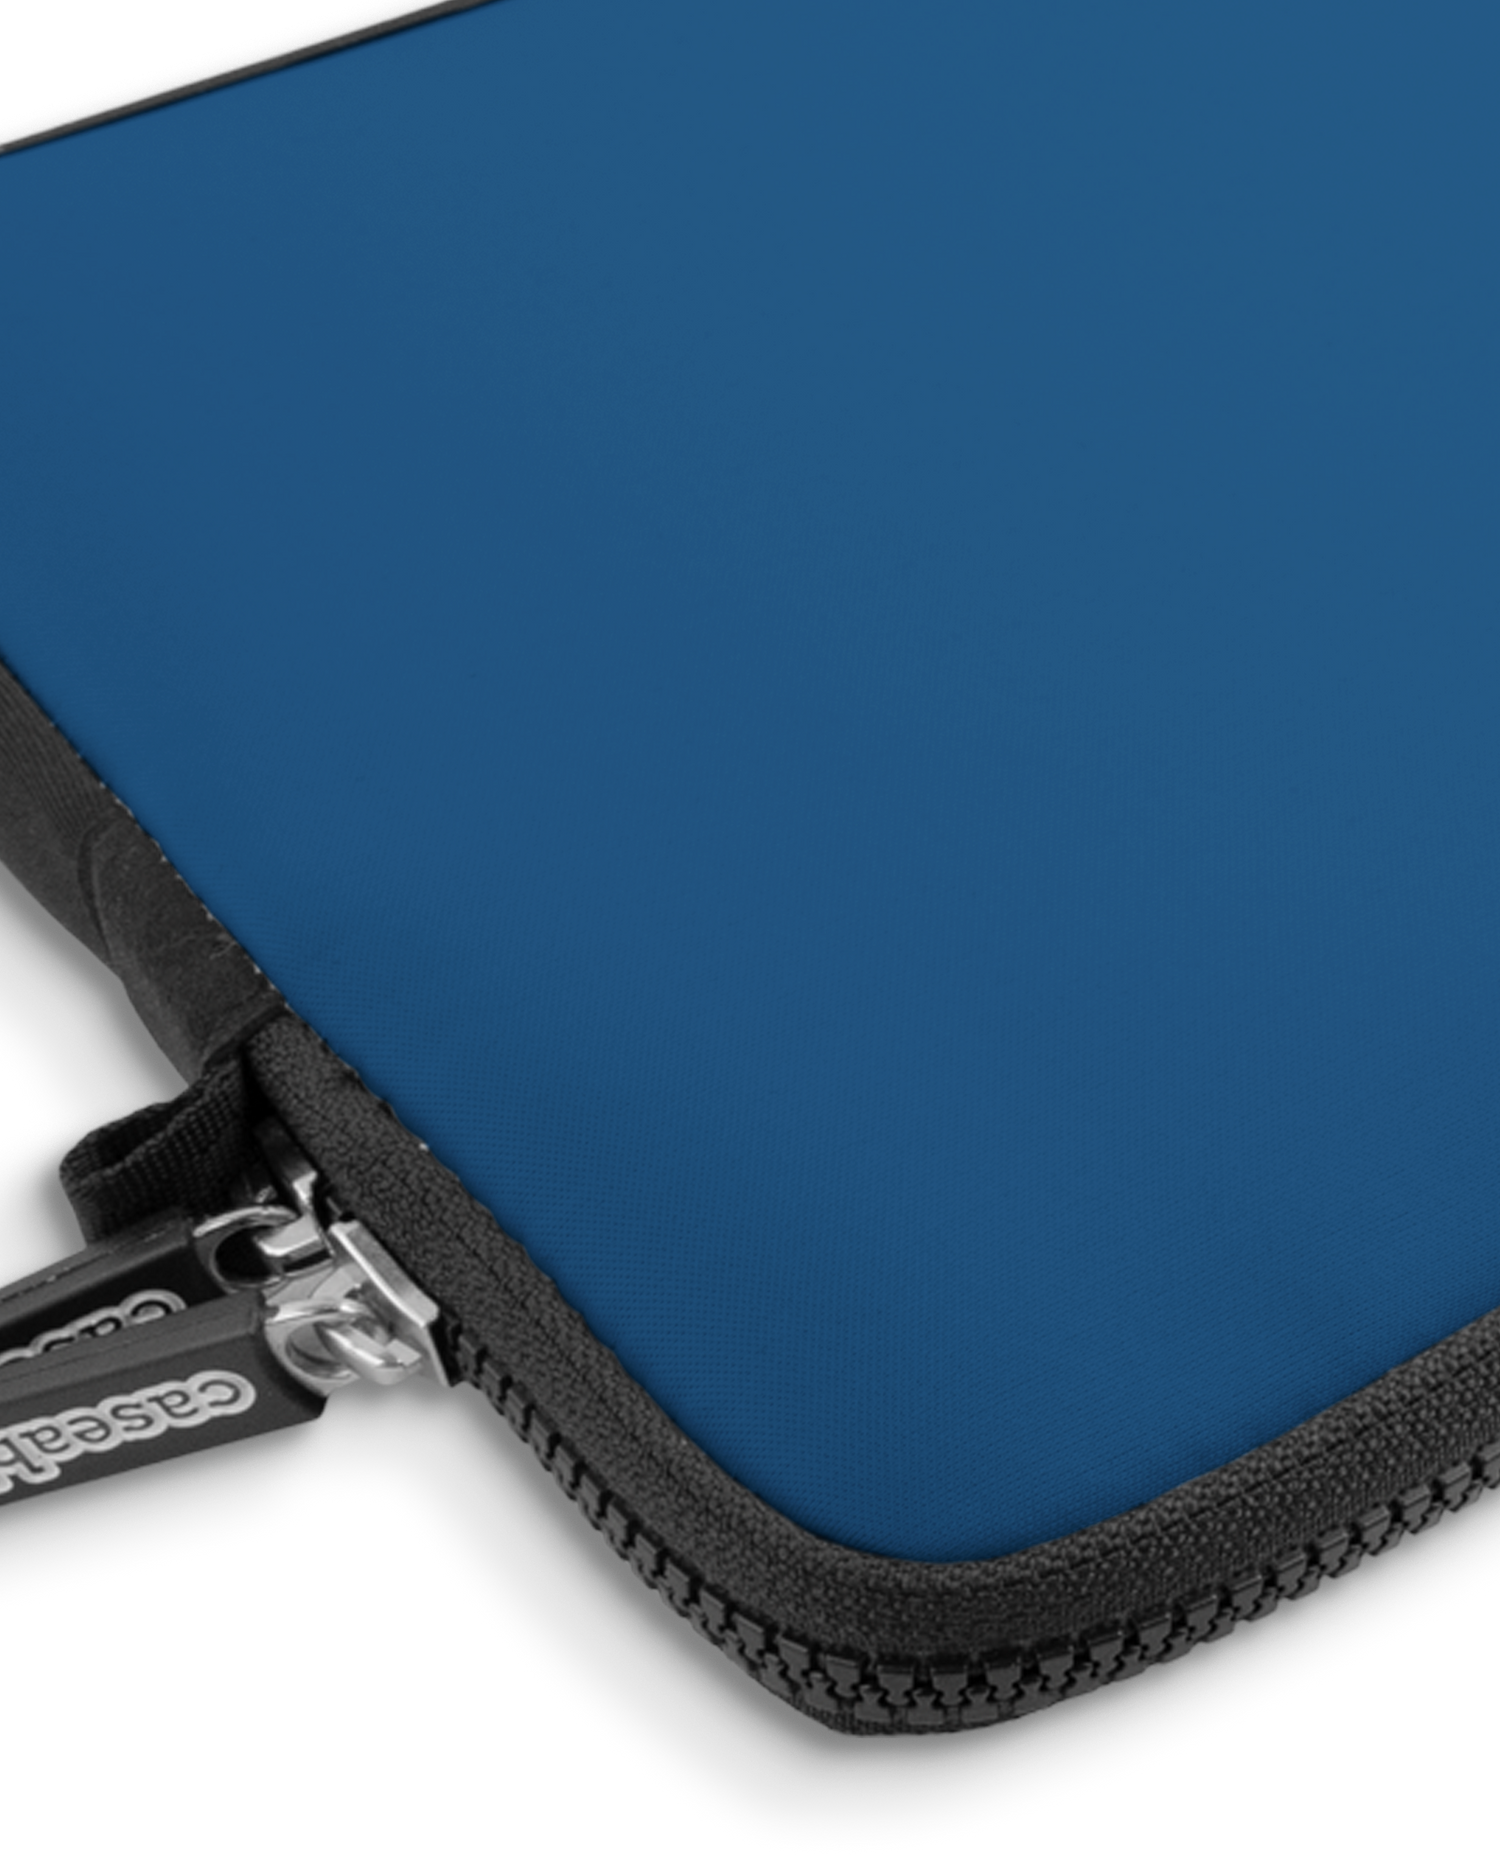 CLASSIC BLUE Premium Laptoptasche 13 Zoll mit Gerät im Inneren